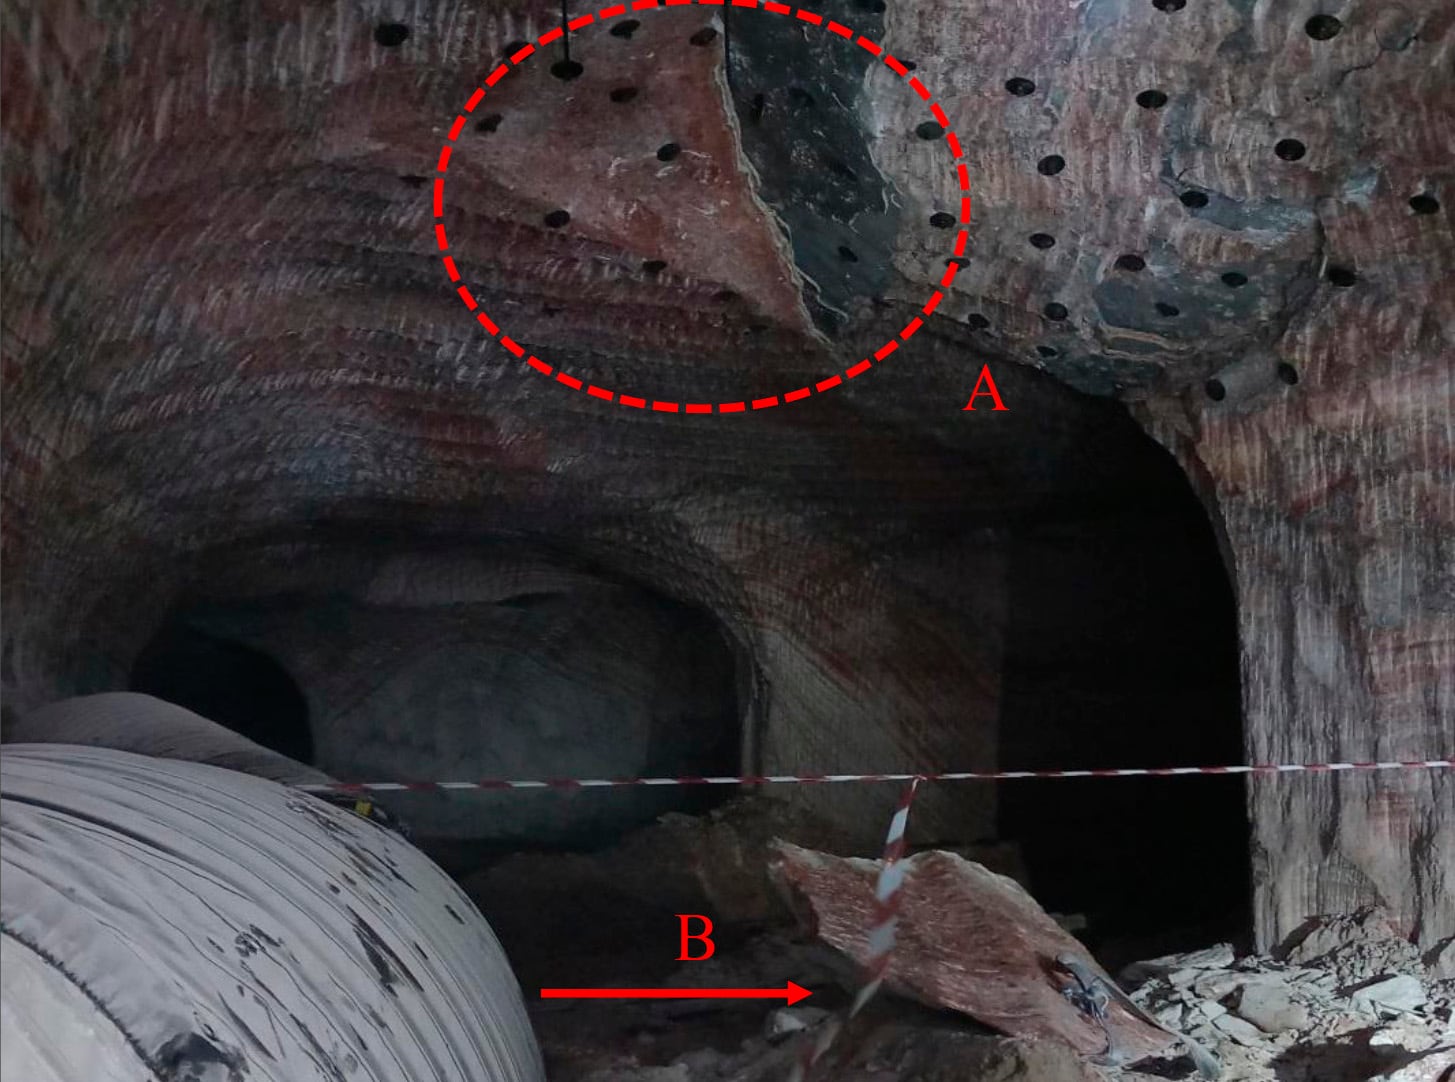 Imagen del lugar del accidente. El punto A es el desprendimiento de parte del techo, y el punto B la roca desprendida.